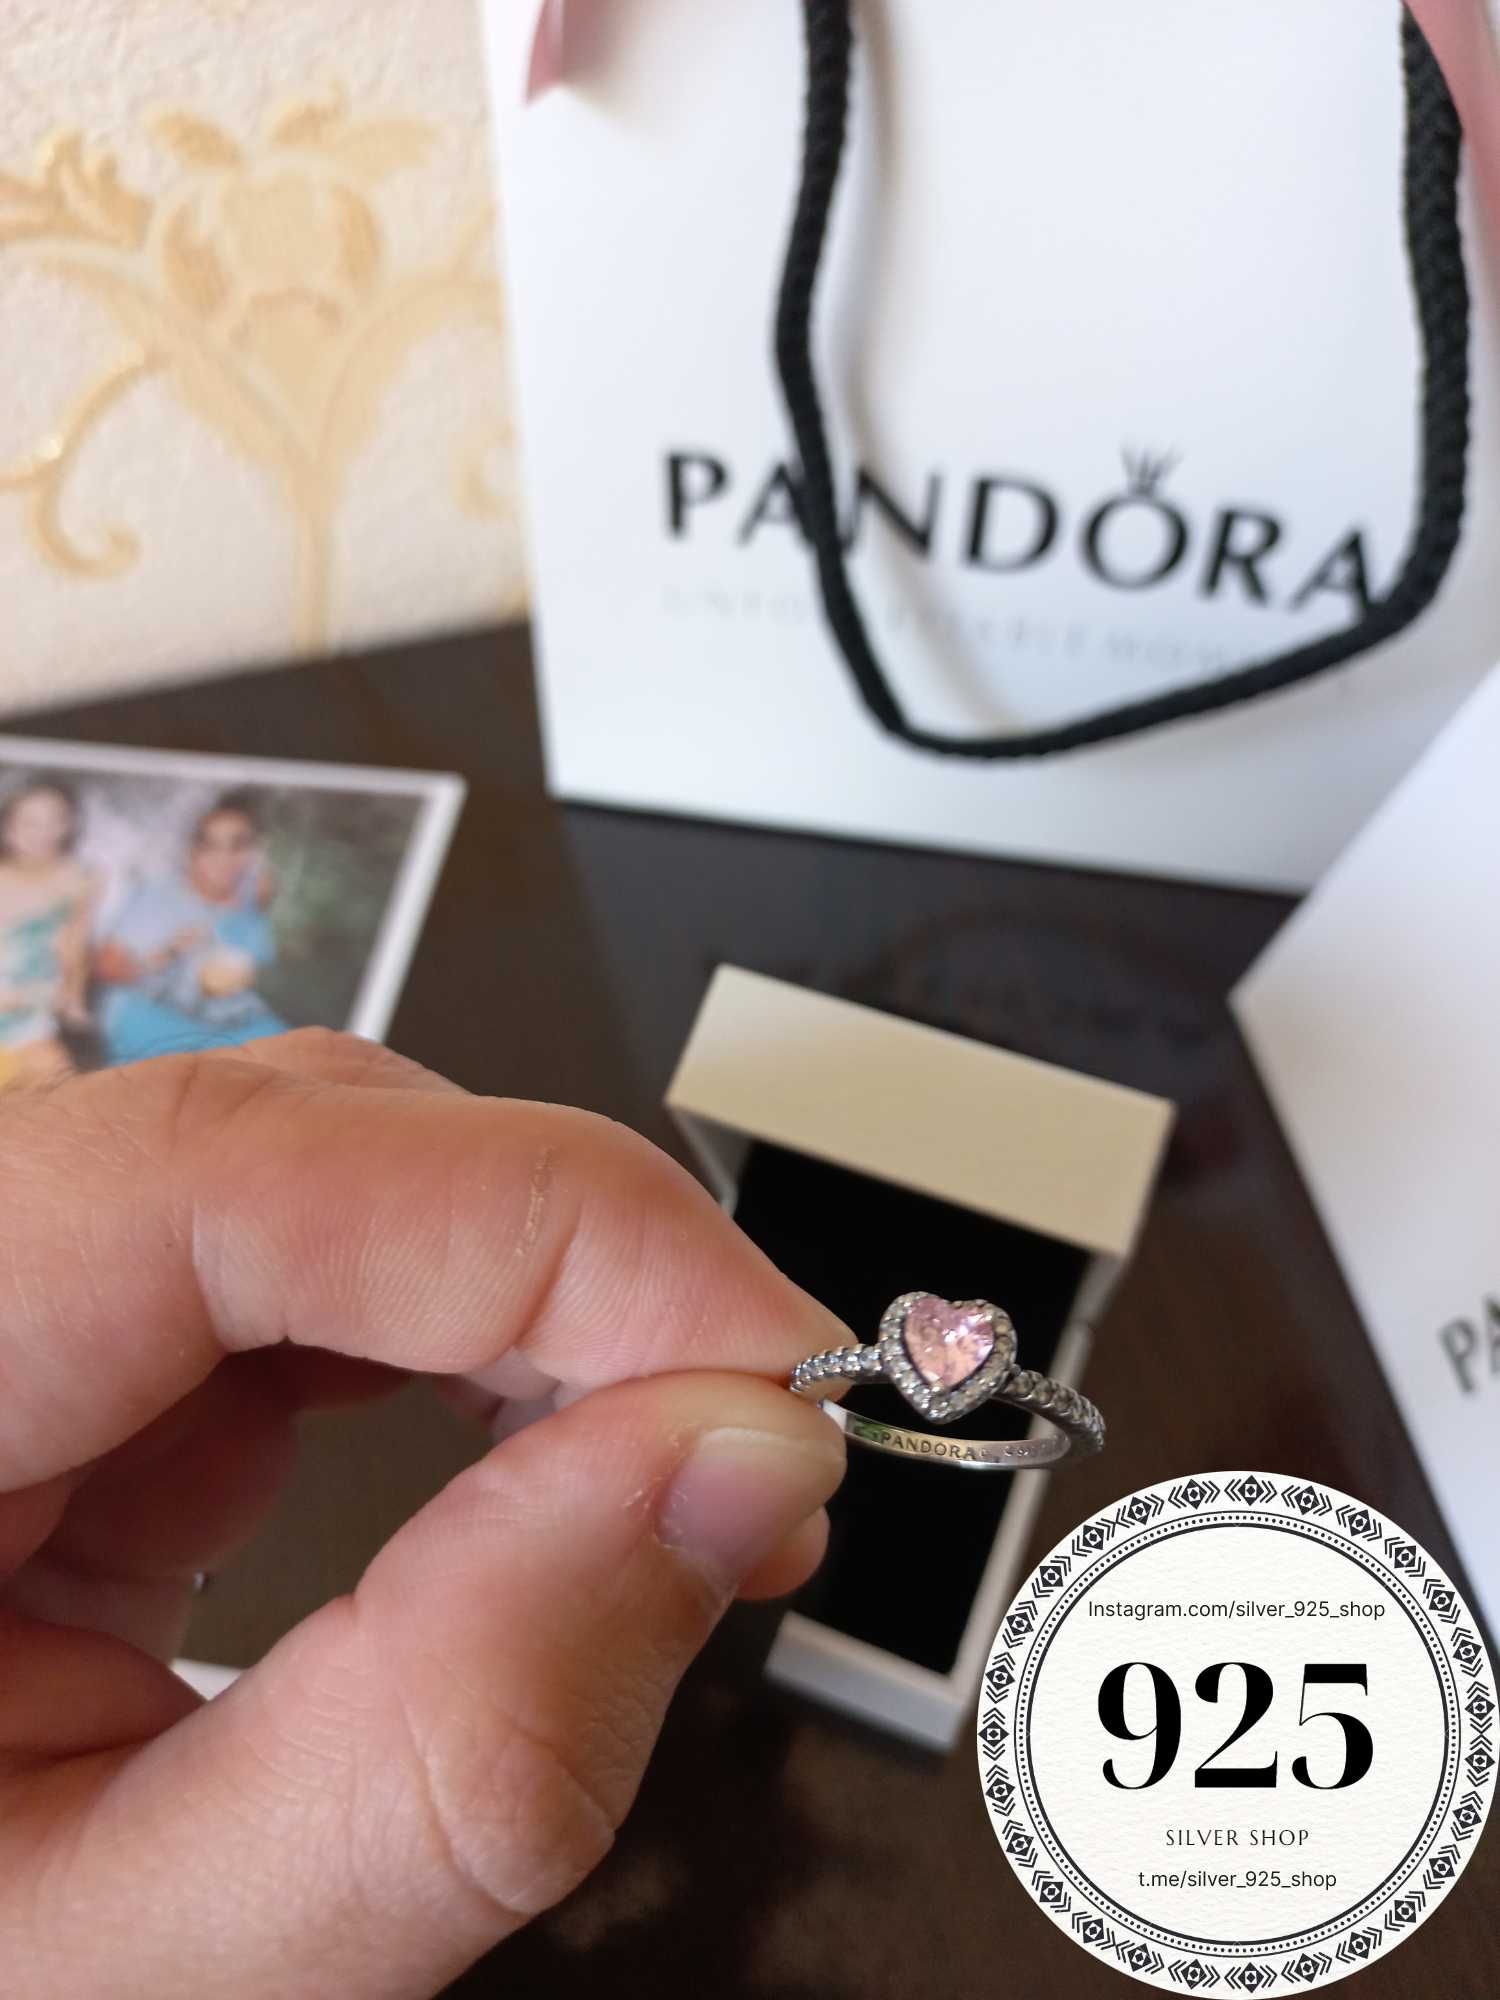 Серебряное кольцо от Pandora (оригинал) | Pandora брендидан кумуш узук